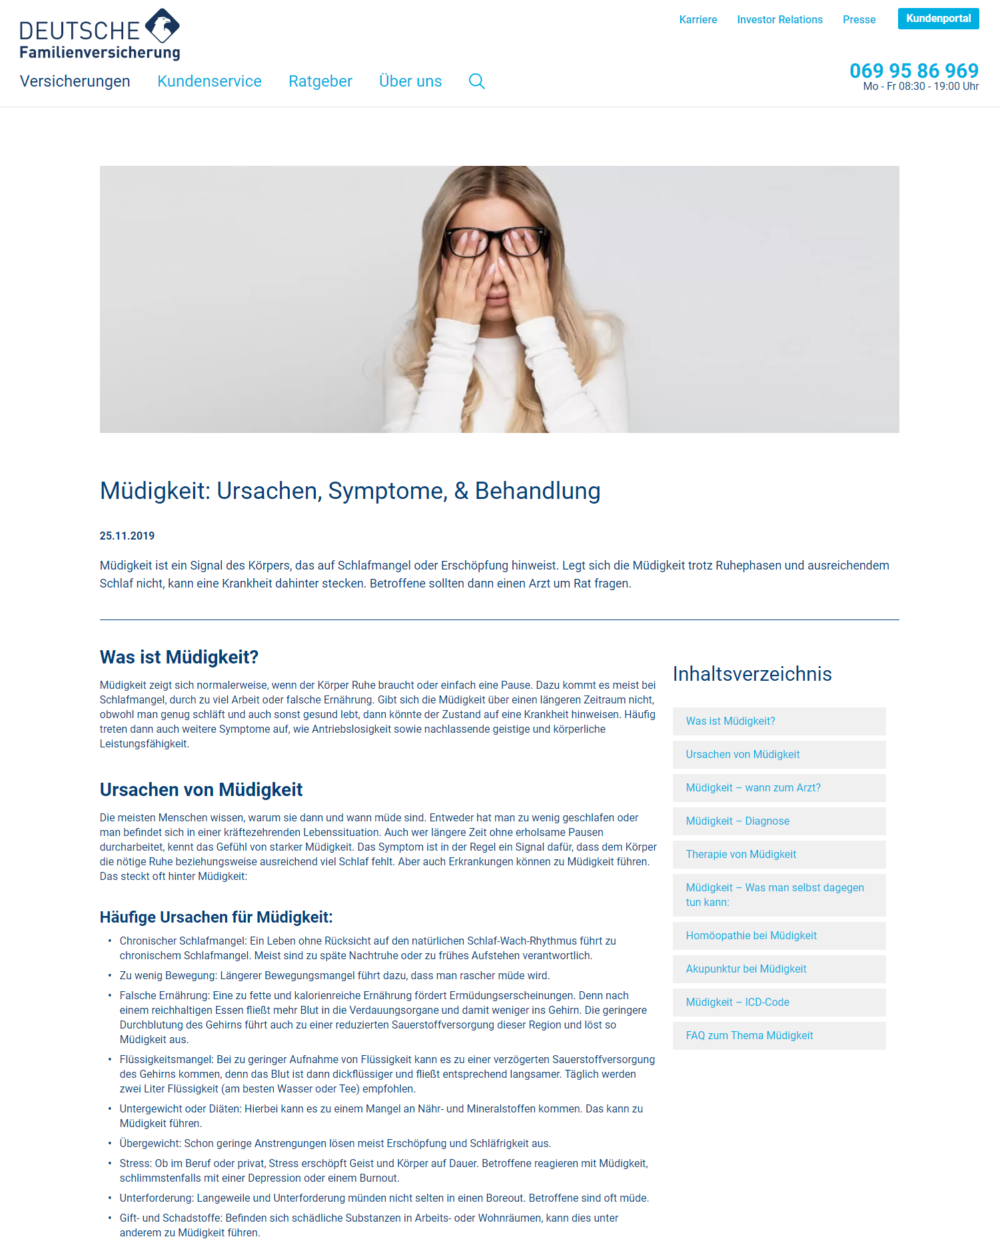 Immer müde? | Die Deutsche Familienversicherung zum Thema Müdigkeit - Ursachen, Symptome, Behandlung